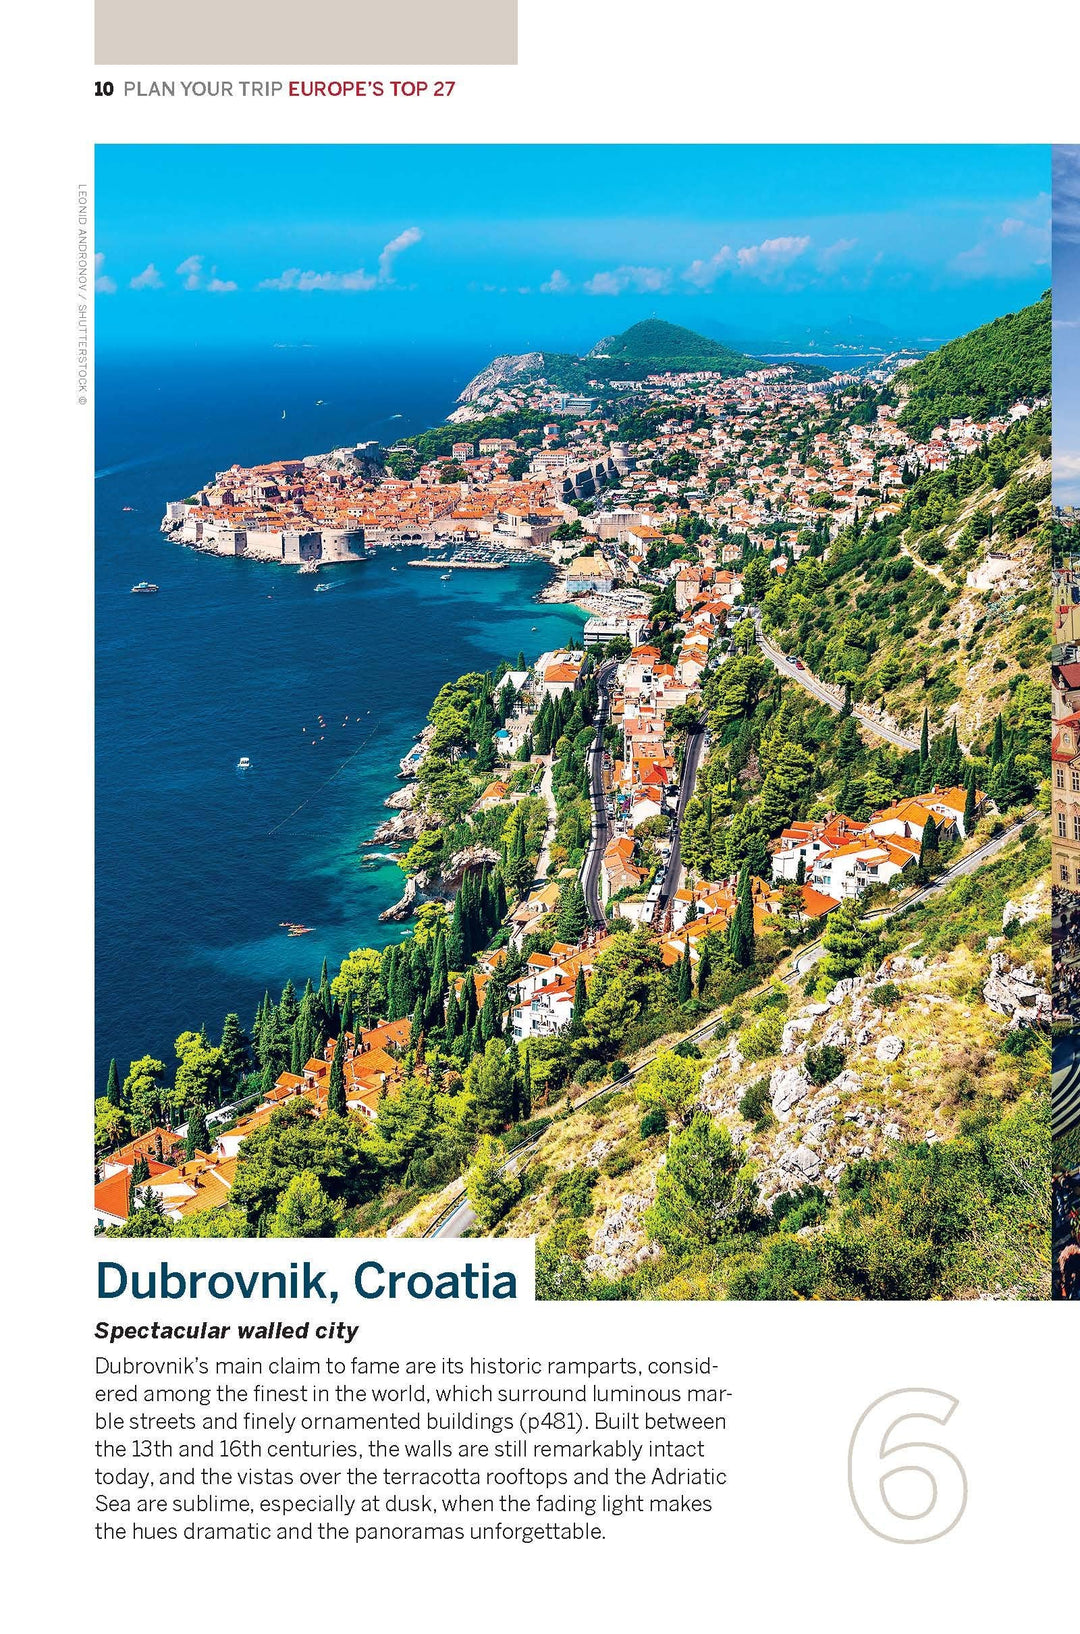 Guide de voyage (en anglais) - Best of Europe | Lonely Planet guide de voyage Lonely Planet 